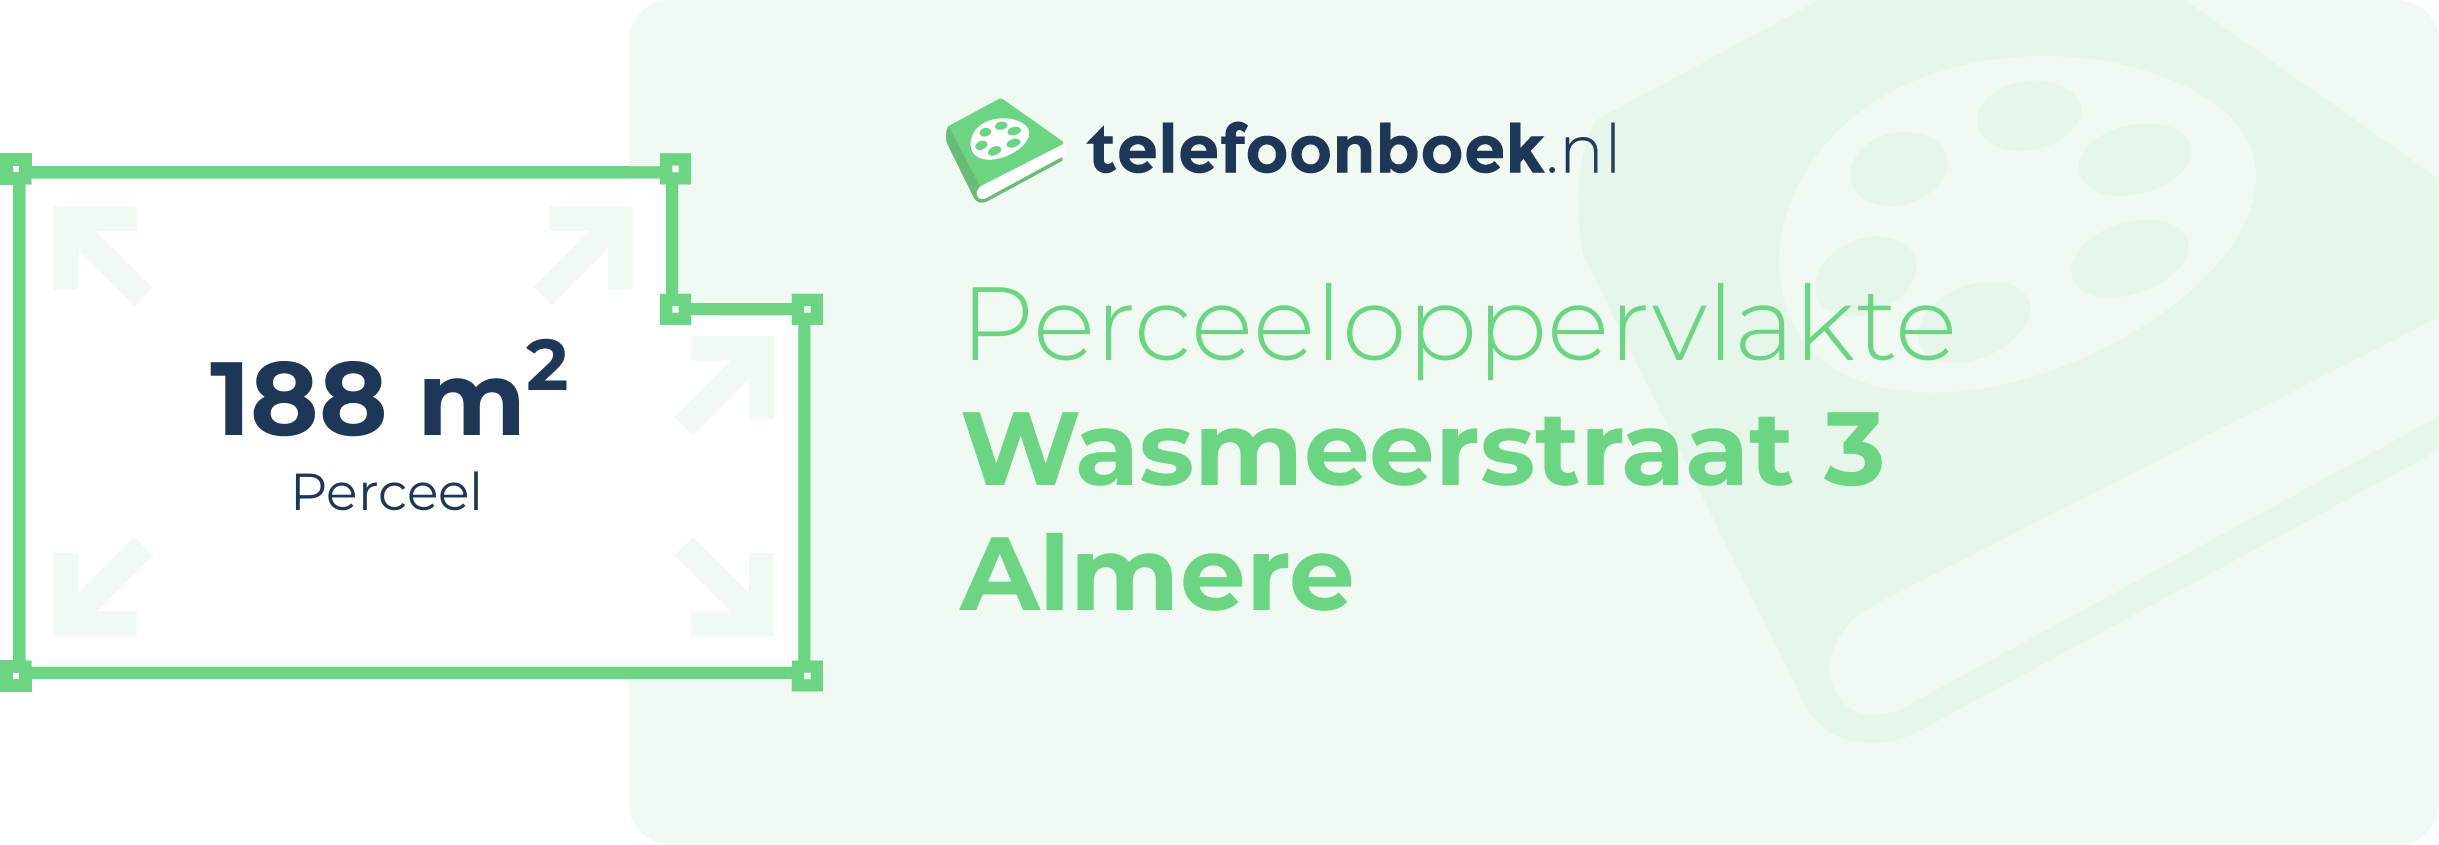 Perceeloppervlakte Wasmeerstraat 3 Almere